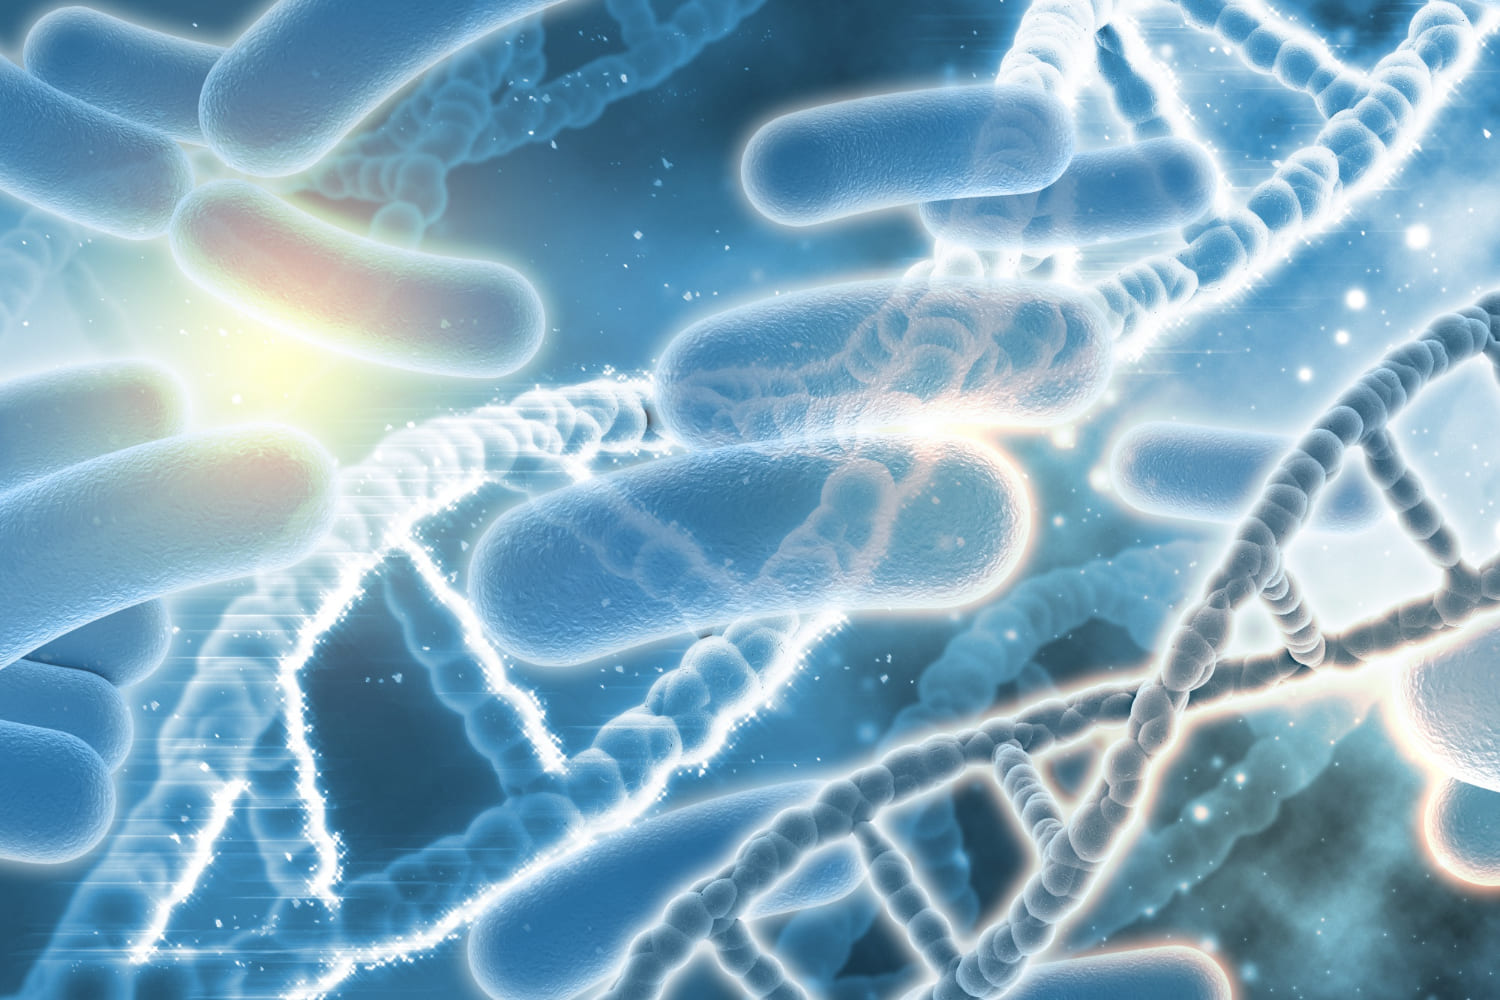 Биоинженеры создали бактерии, способные обнаруживать опухолевую ДНК